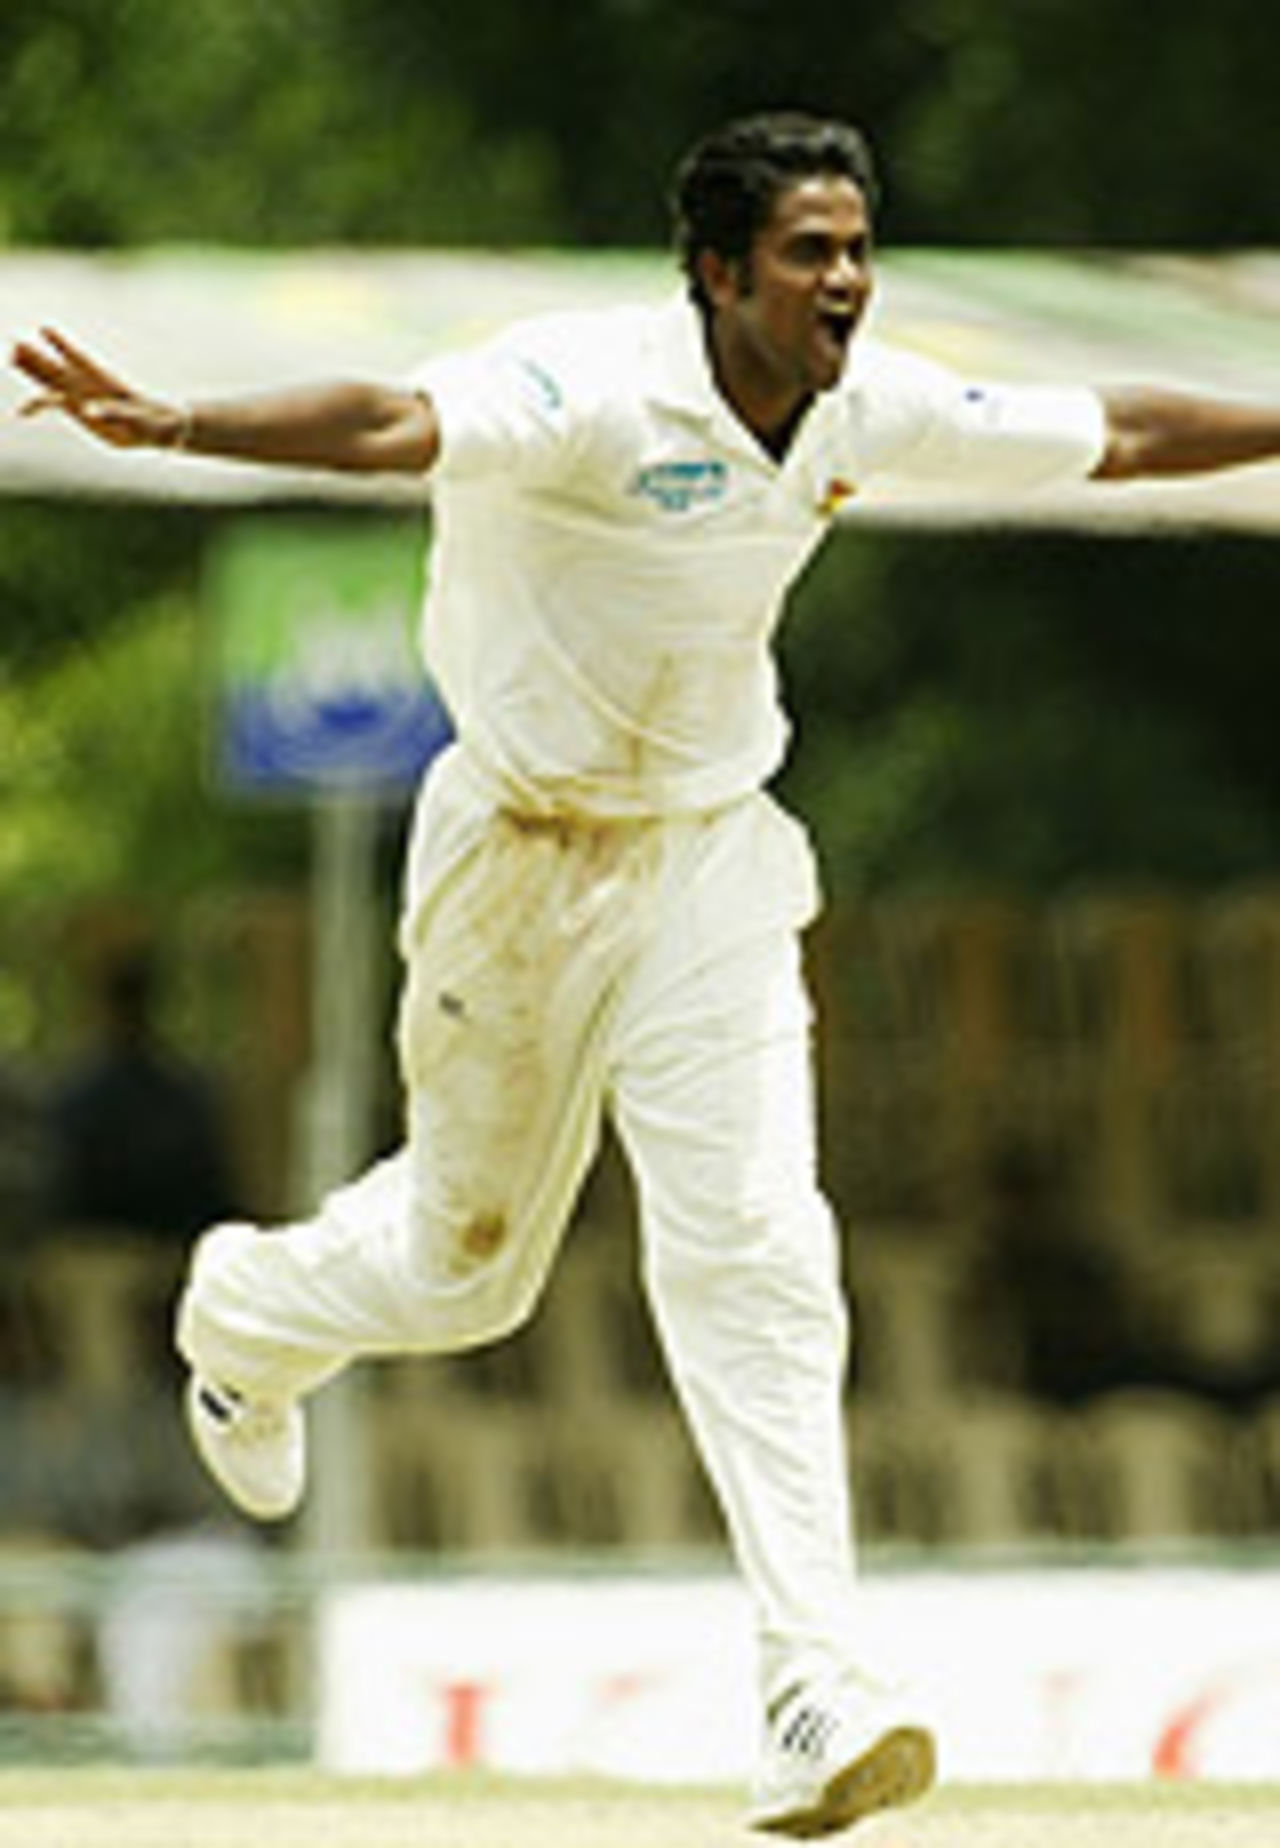 Nuwan Zoysa runs around celebrating a wicket, Sri Lanka v Australia, 2nd Test, Kandy, 1st day, March 16, 2004